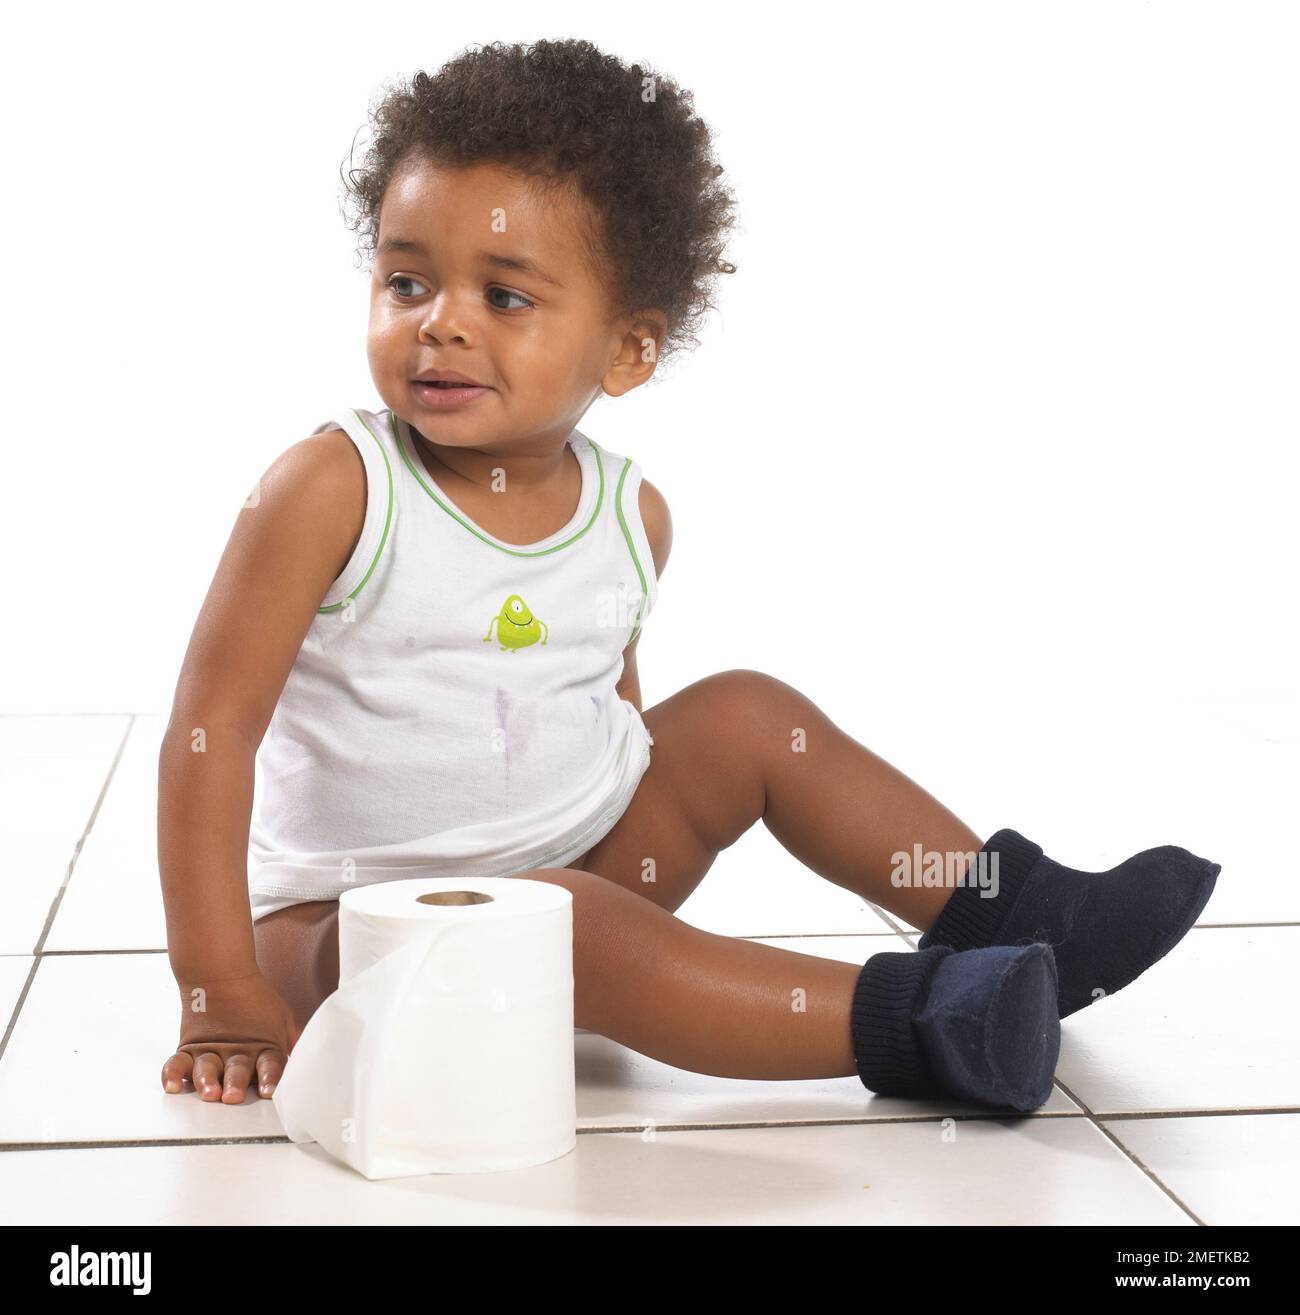 Ein Junge mit Weste und Hausschuhen, der auf dem Boden sitzt, mit einer Rolle Toilettenpapier, 17 Monate Stockfoto